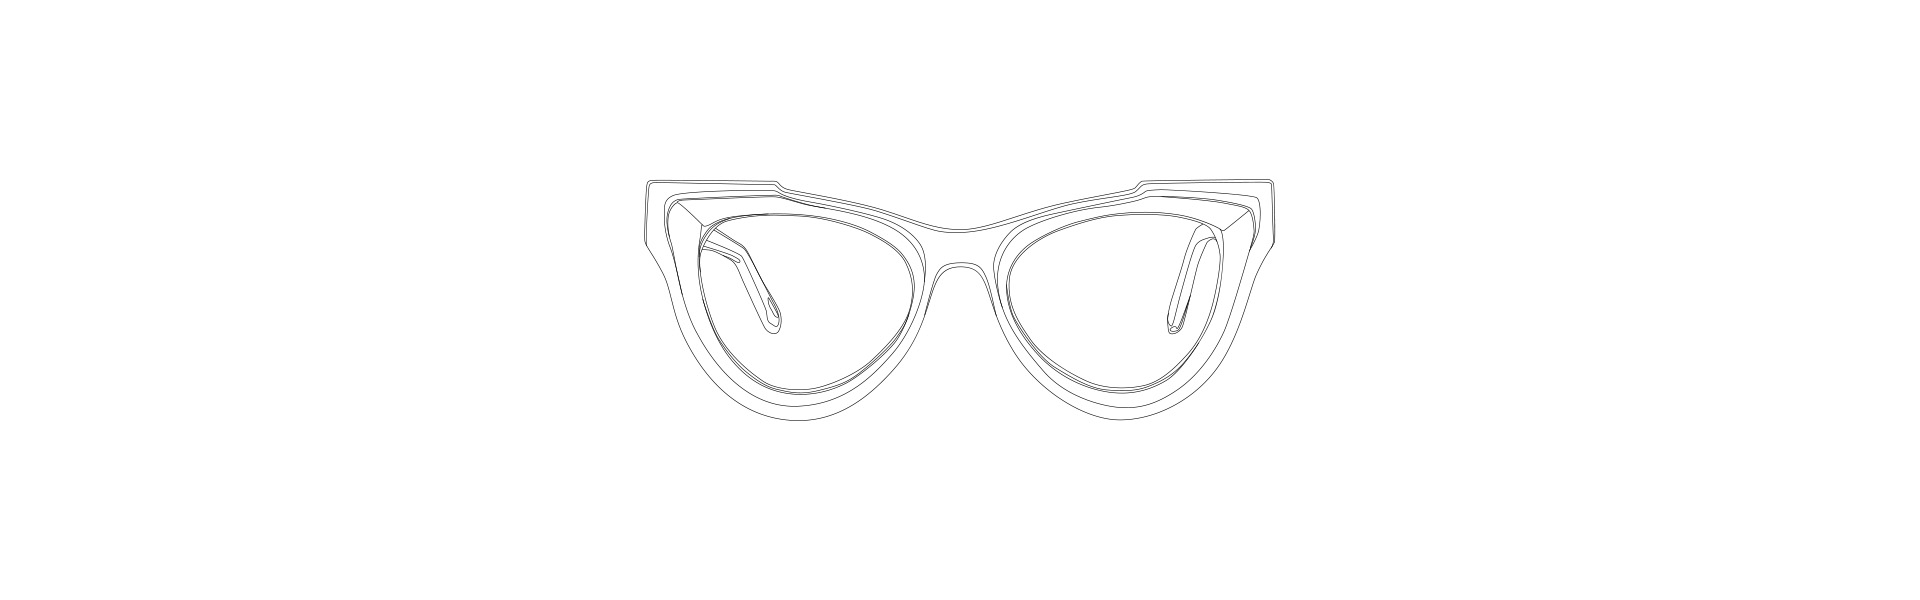 Ilustração a traço de óculos LIVO.